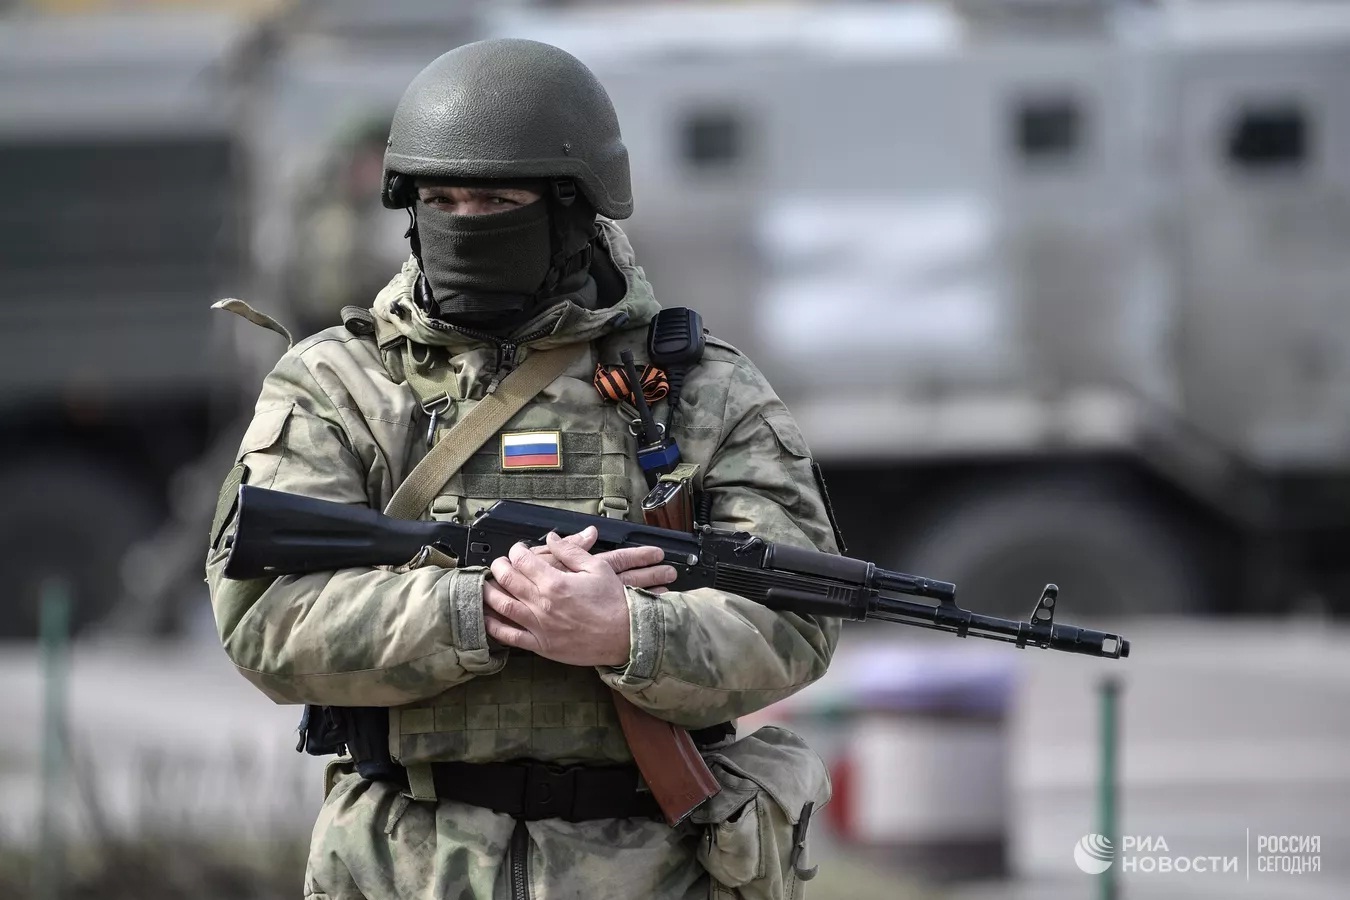 Tình hình Nga-Ukraine: Vũ khí phương Tây cung cấp cho Kiev có thể rơi vào tay khủng bố